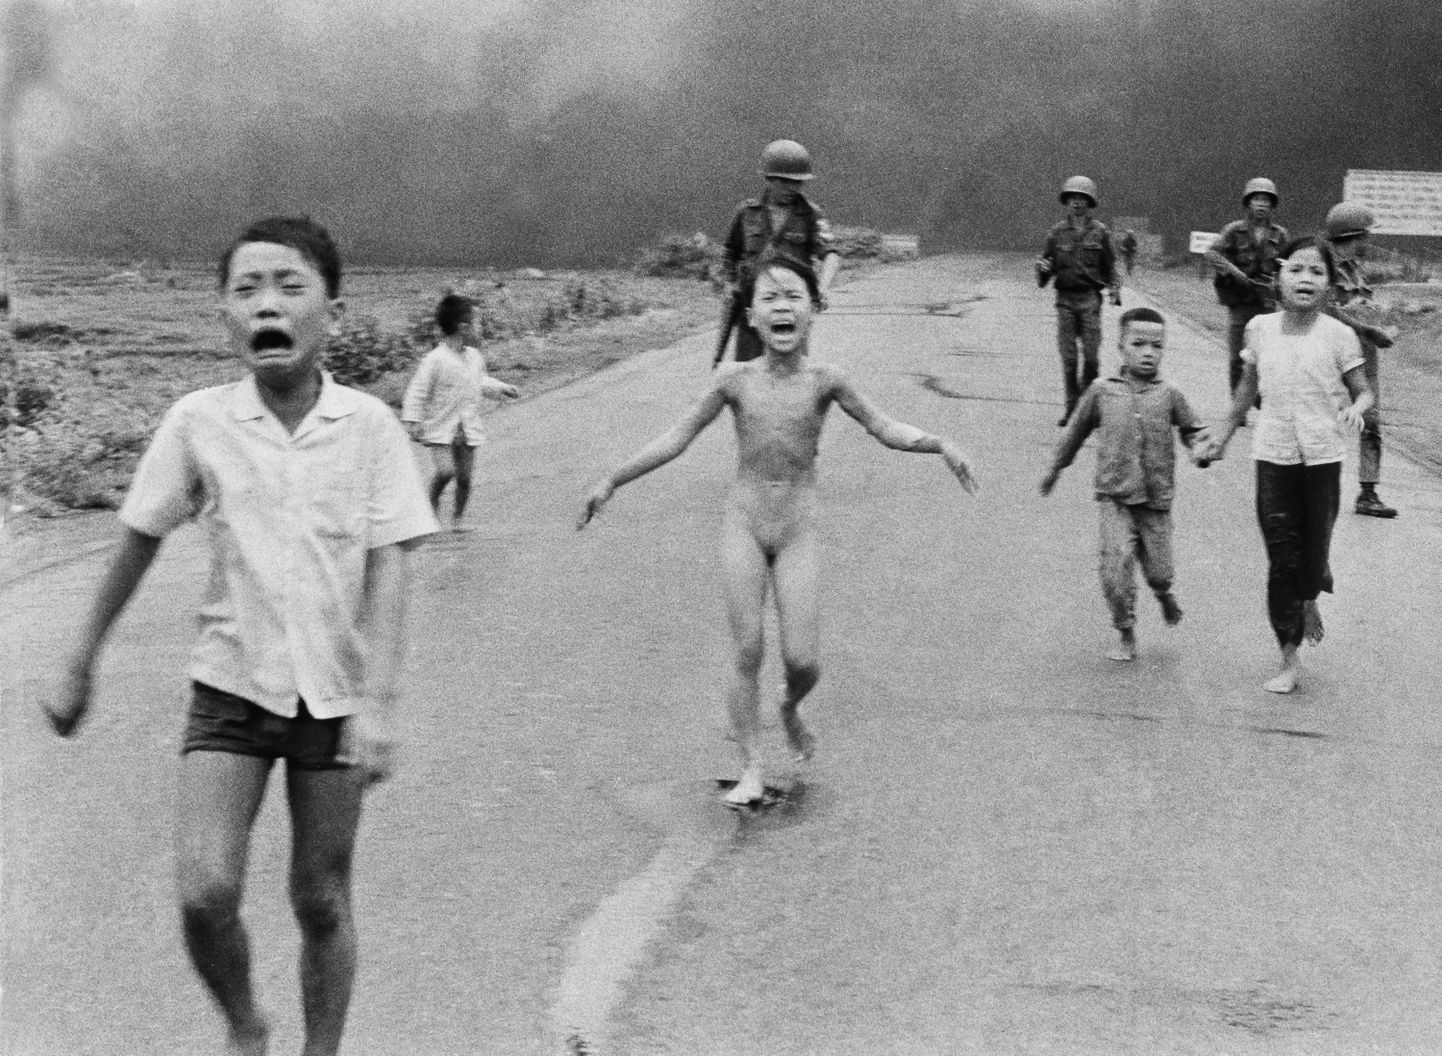 AP fotograafi, Vietnami päritolu Huynh Cong Nick Uti tehtud foto 8. juunil 1972. Lõuna-Vietnami  armee lennuk viskas kogemata napalmi oma sõduritele ja tsiviilisikutele. Foto keskel on alasti üheksa-aastane Phan Thi Kim Phuc, kes sai napalmi tõttu raskelt vigastada